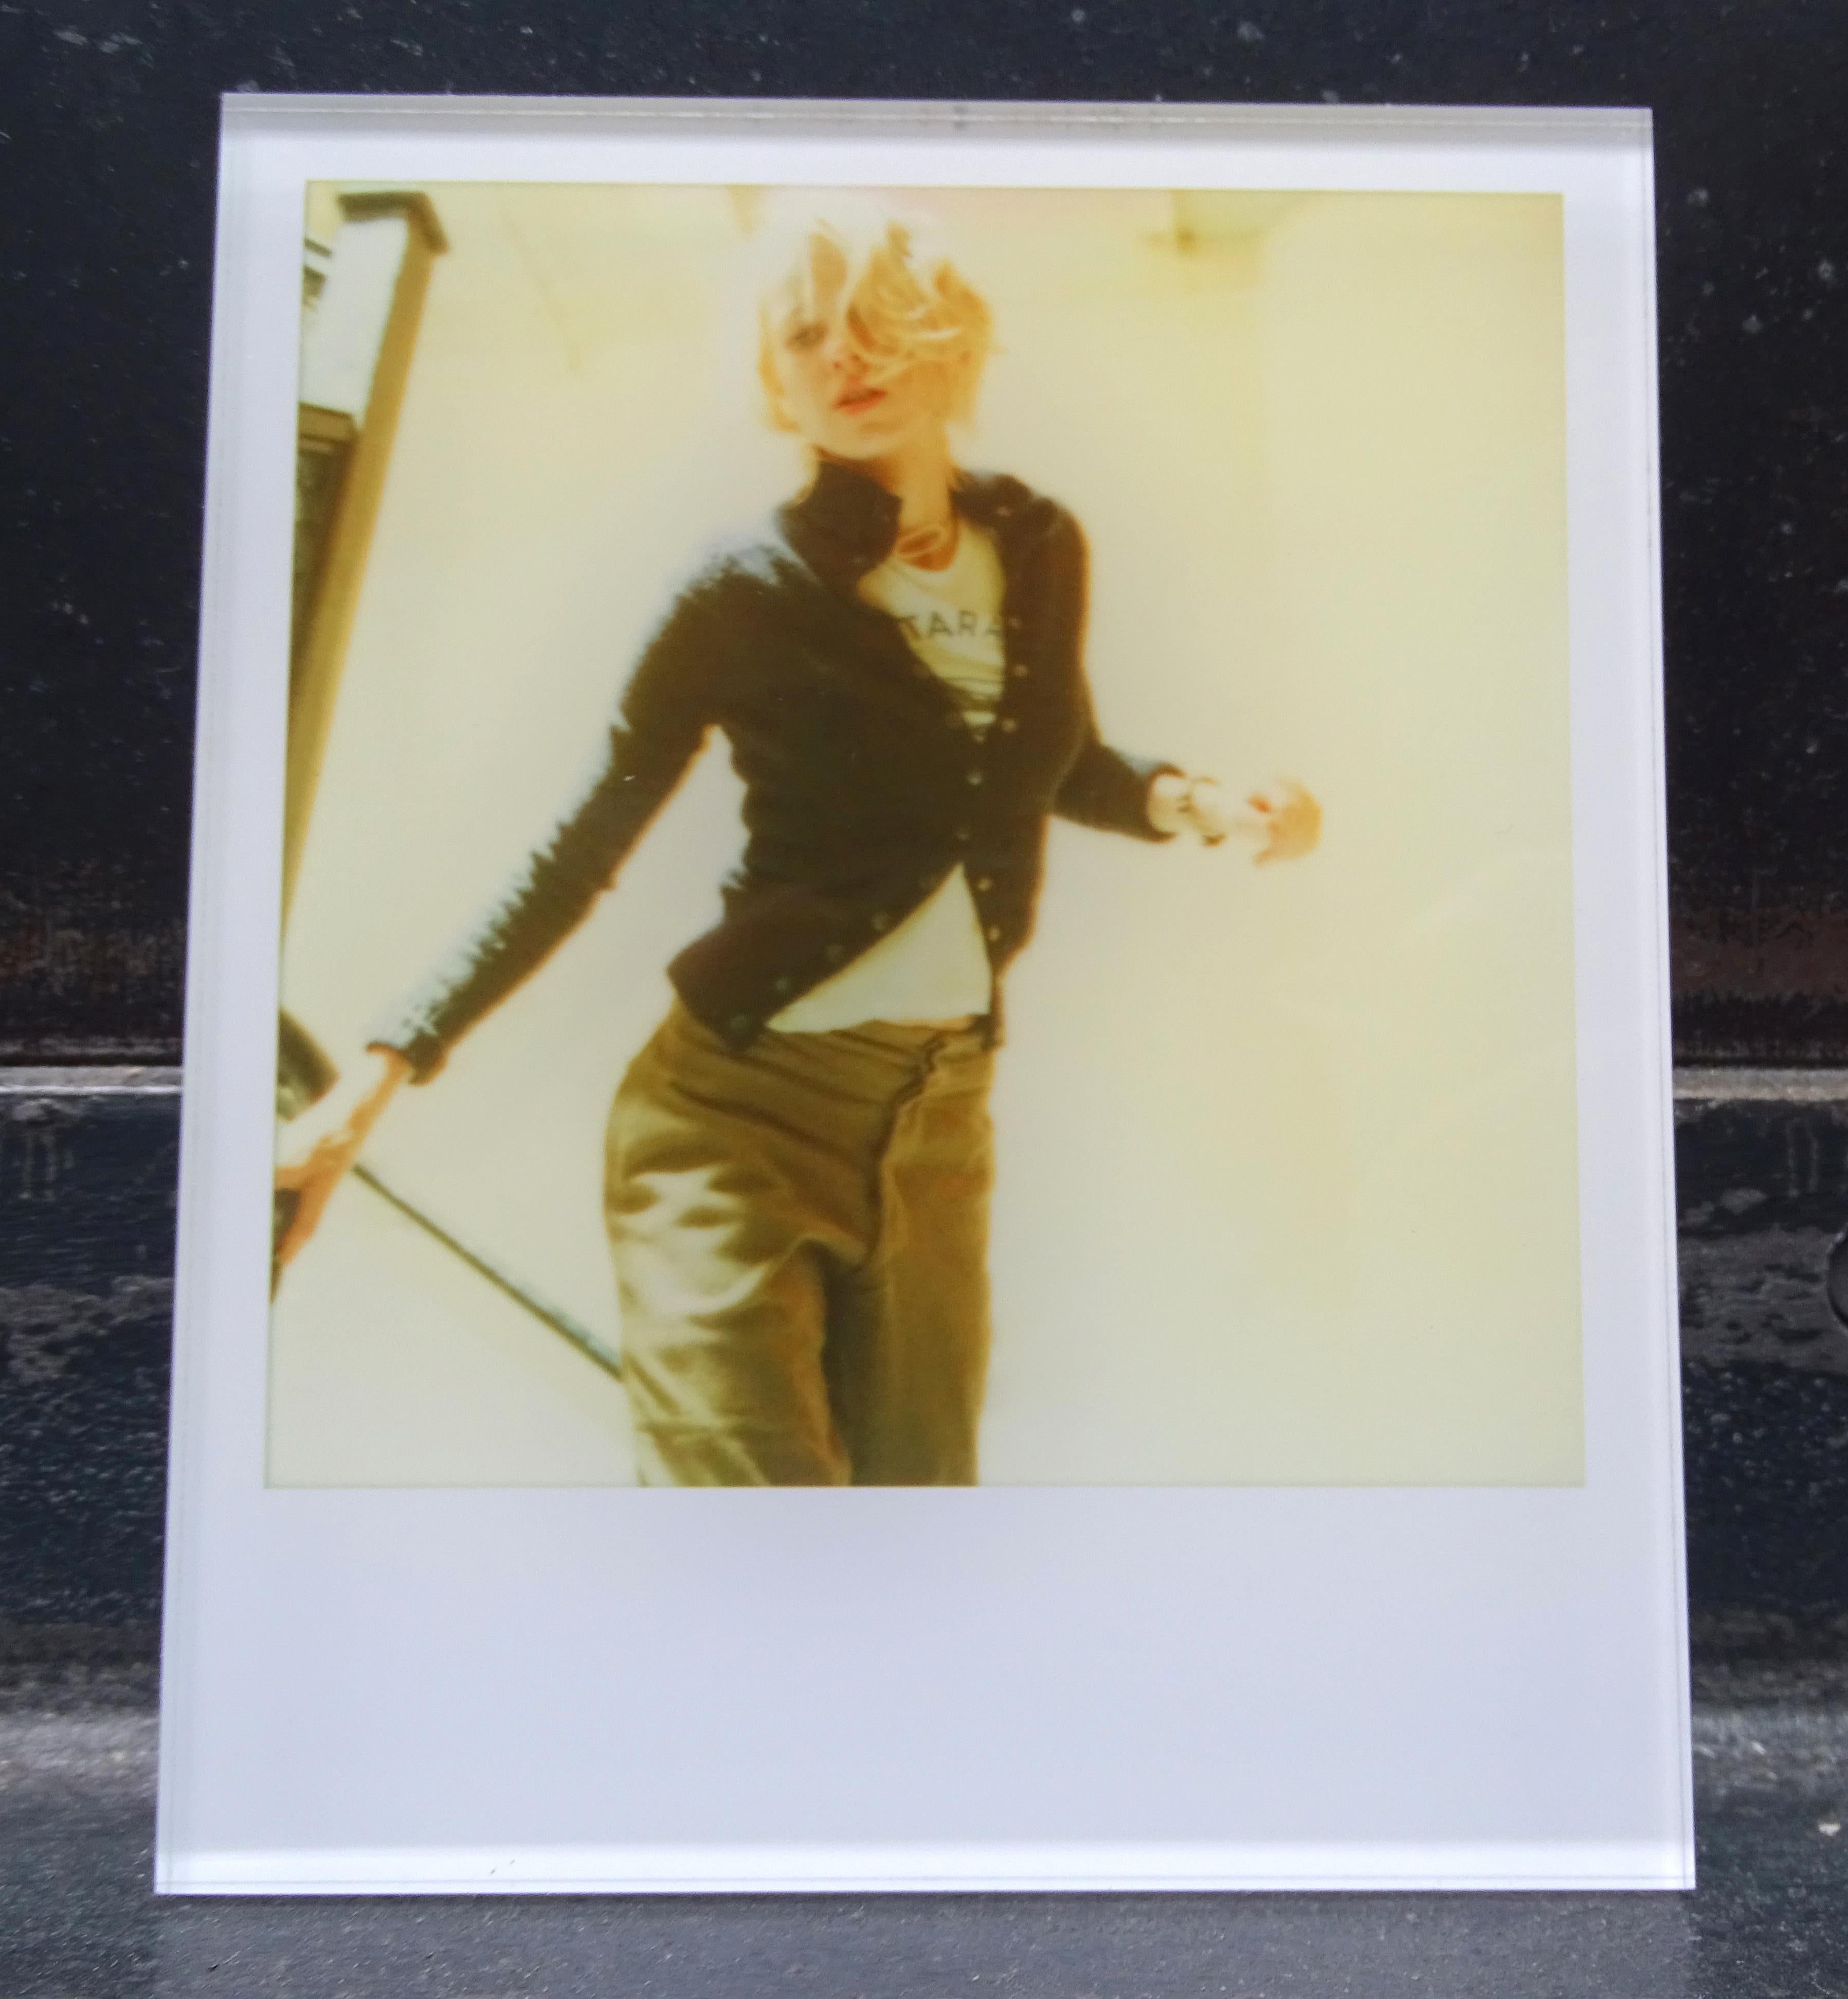 Die Minis von Stefanie Schneider
Lila rennt die Treppe hinunter (Stay) - mit Naomi Watts, 2006
verso signiert und Signaturmarke
Digitale Lambda-Farbfotografien auf Basis der Polaroid

aus dem Film 'Stay' von Marc Forster, mit Ewan McGregor und Naomi